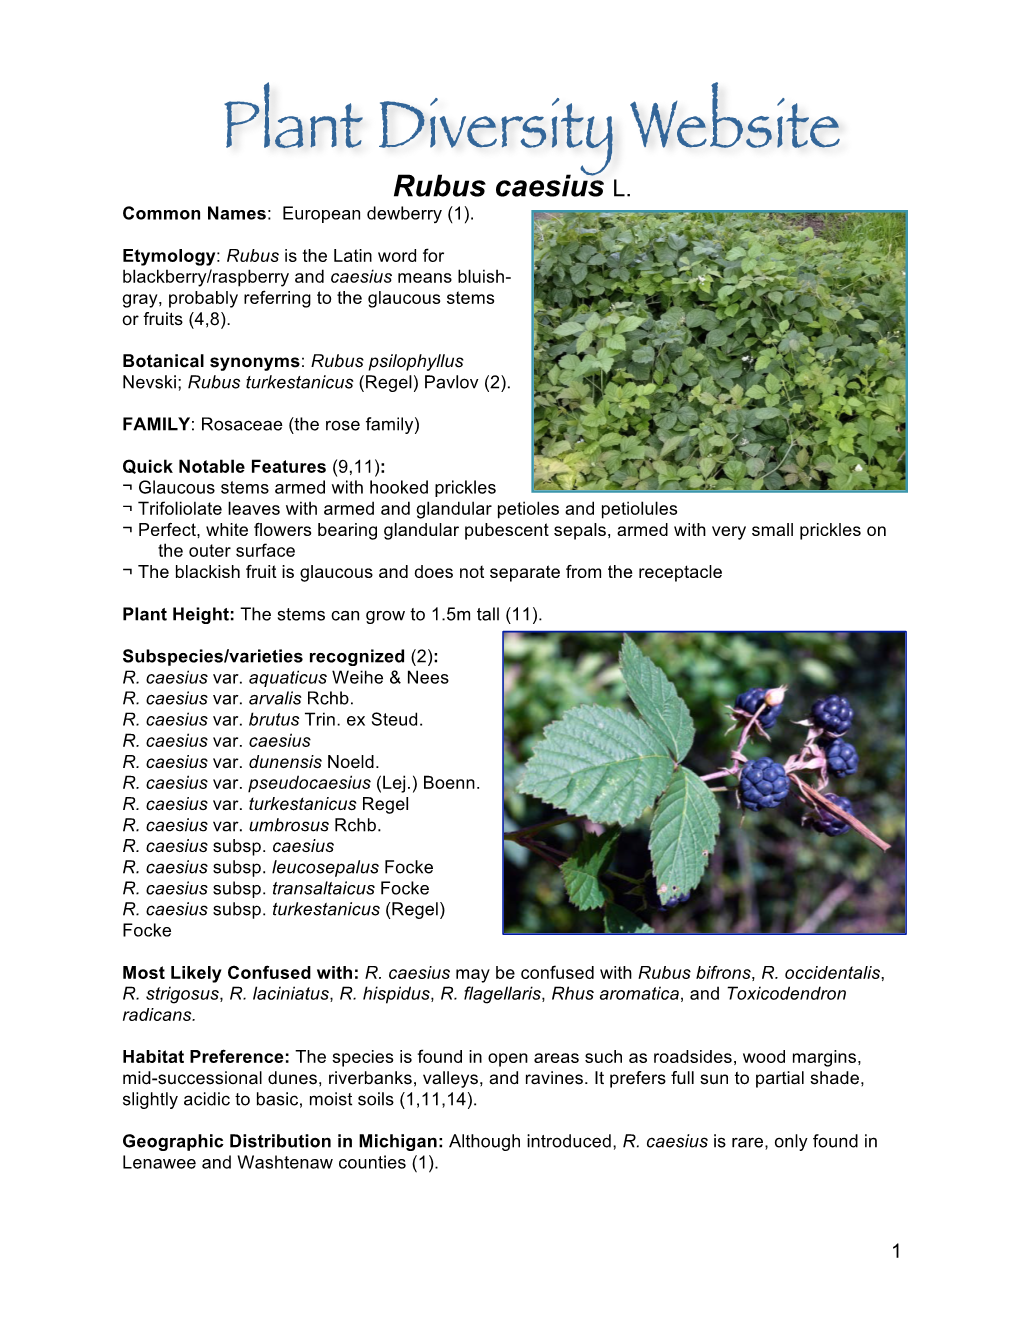 Rubus Caesius L. Common Names: European Dewberry (1)